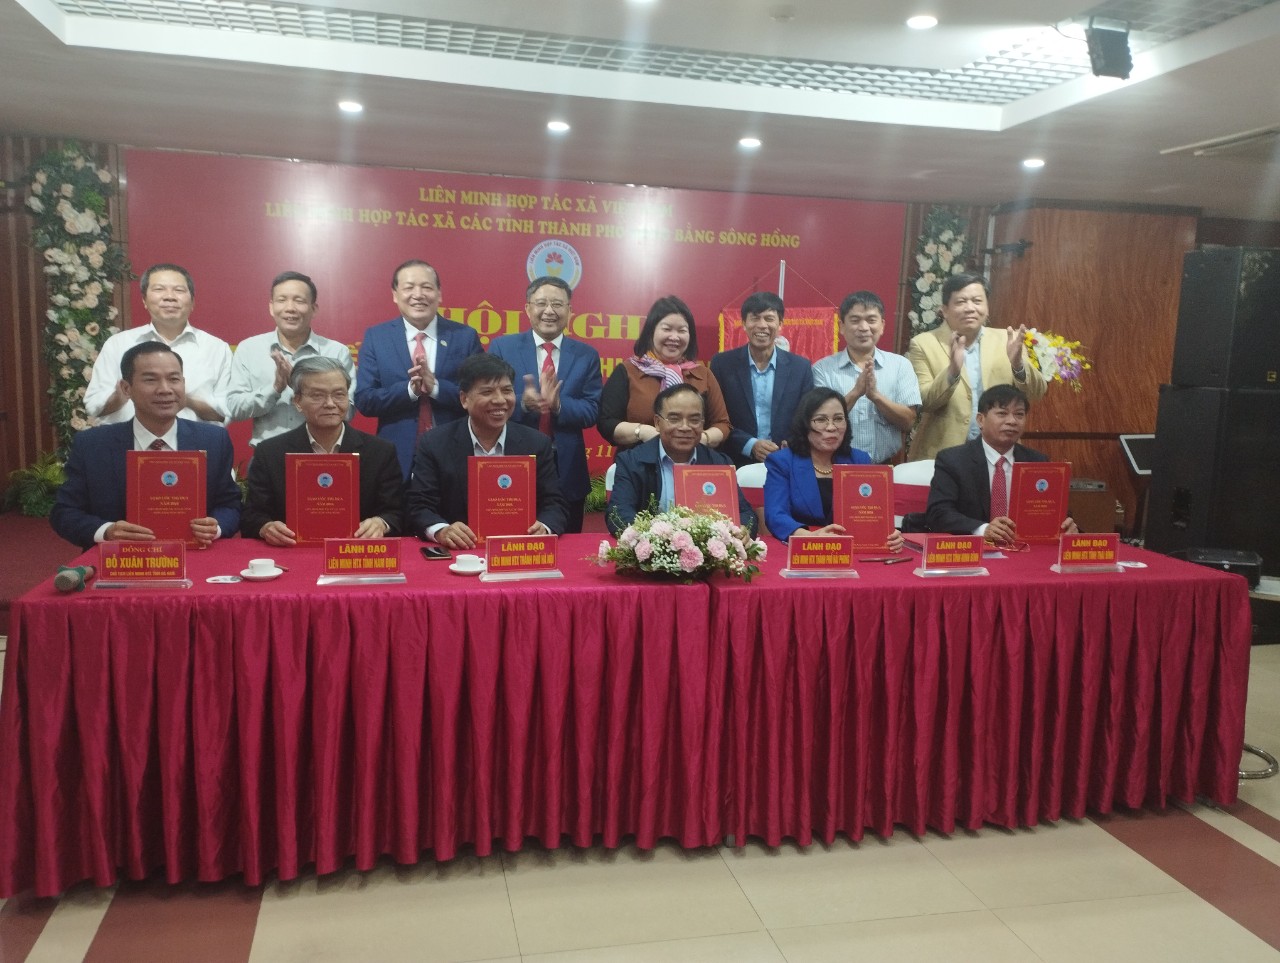 Liên minh Hợp tác xã các tỉnh, thành phố Cụm Đồng bằng Sông Hồng  Tổng kết phong trào thi đua năm 2023, nhiệm vụ trọng tâm năm 2024  và Tổ chức Hội nghị xúc tiến thương mại, kết nối sản xuất,  tiêu thụ sản phẩm cho các hợp tác xã năm 2023